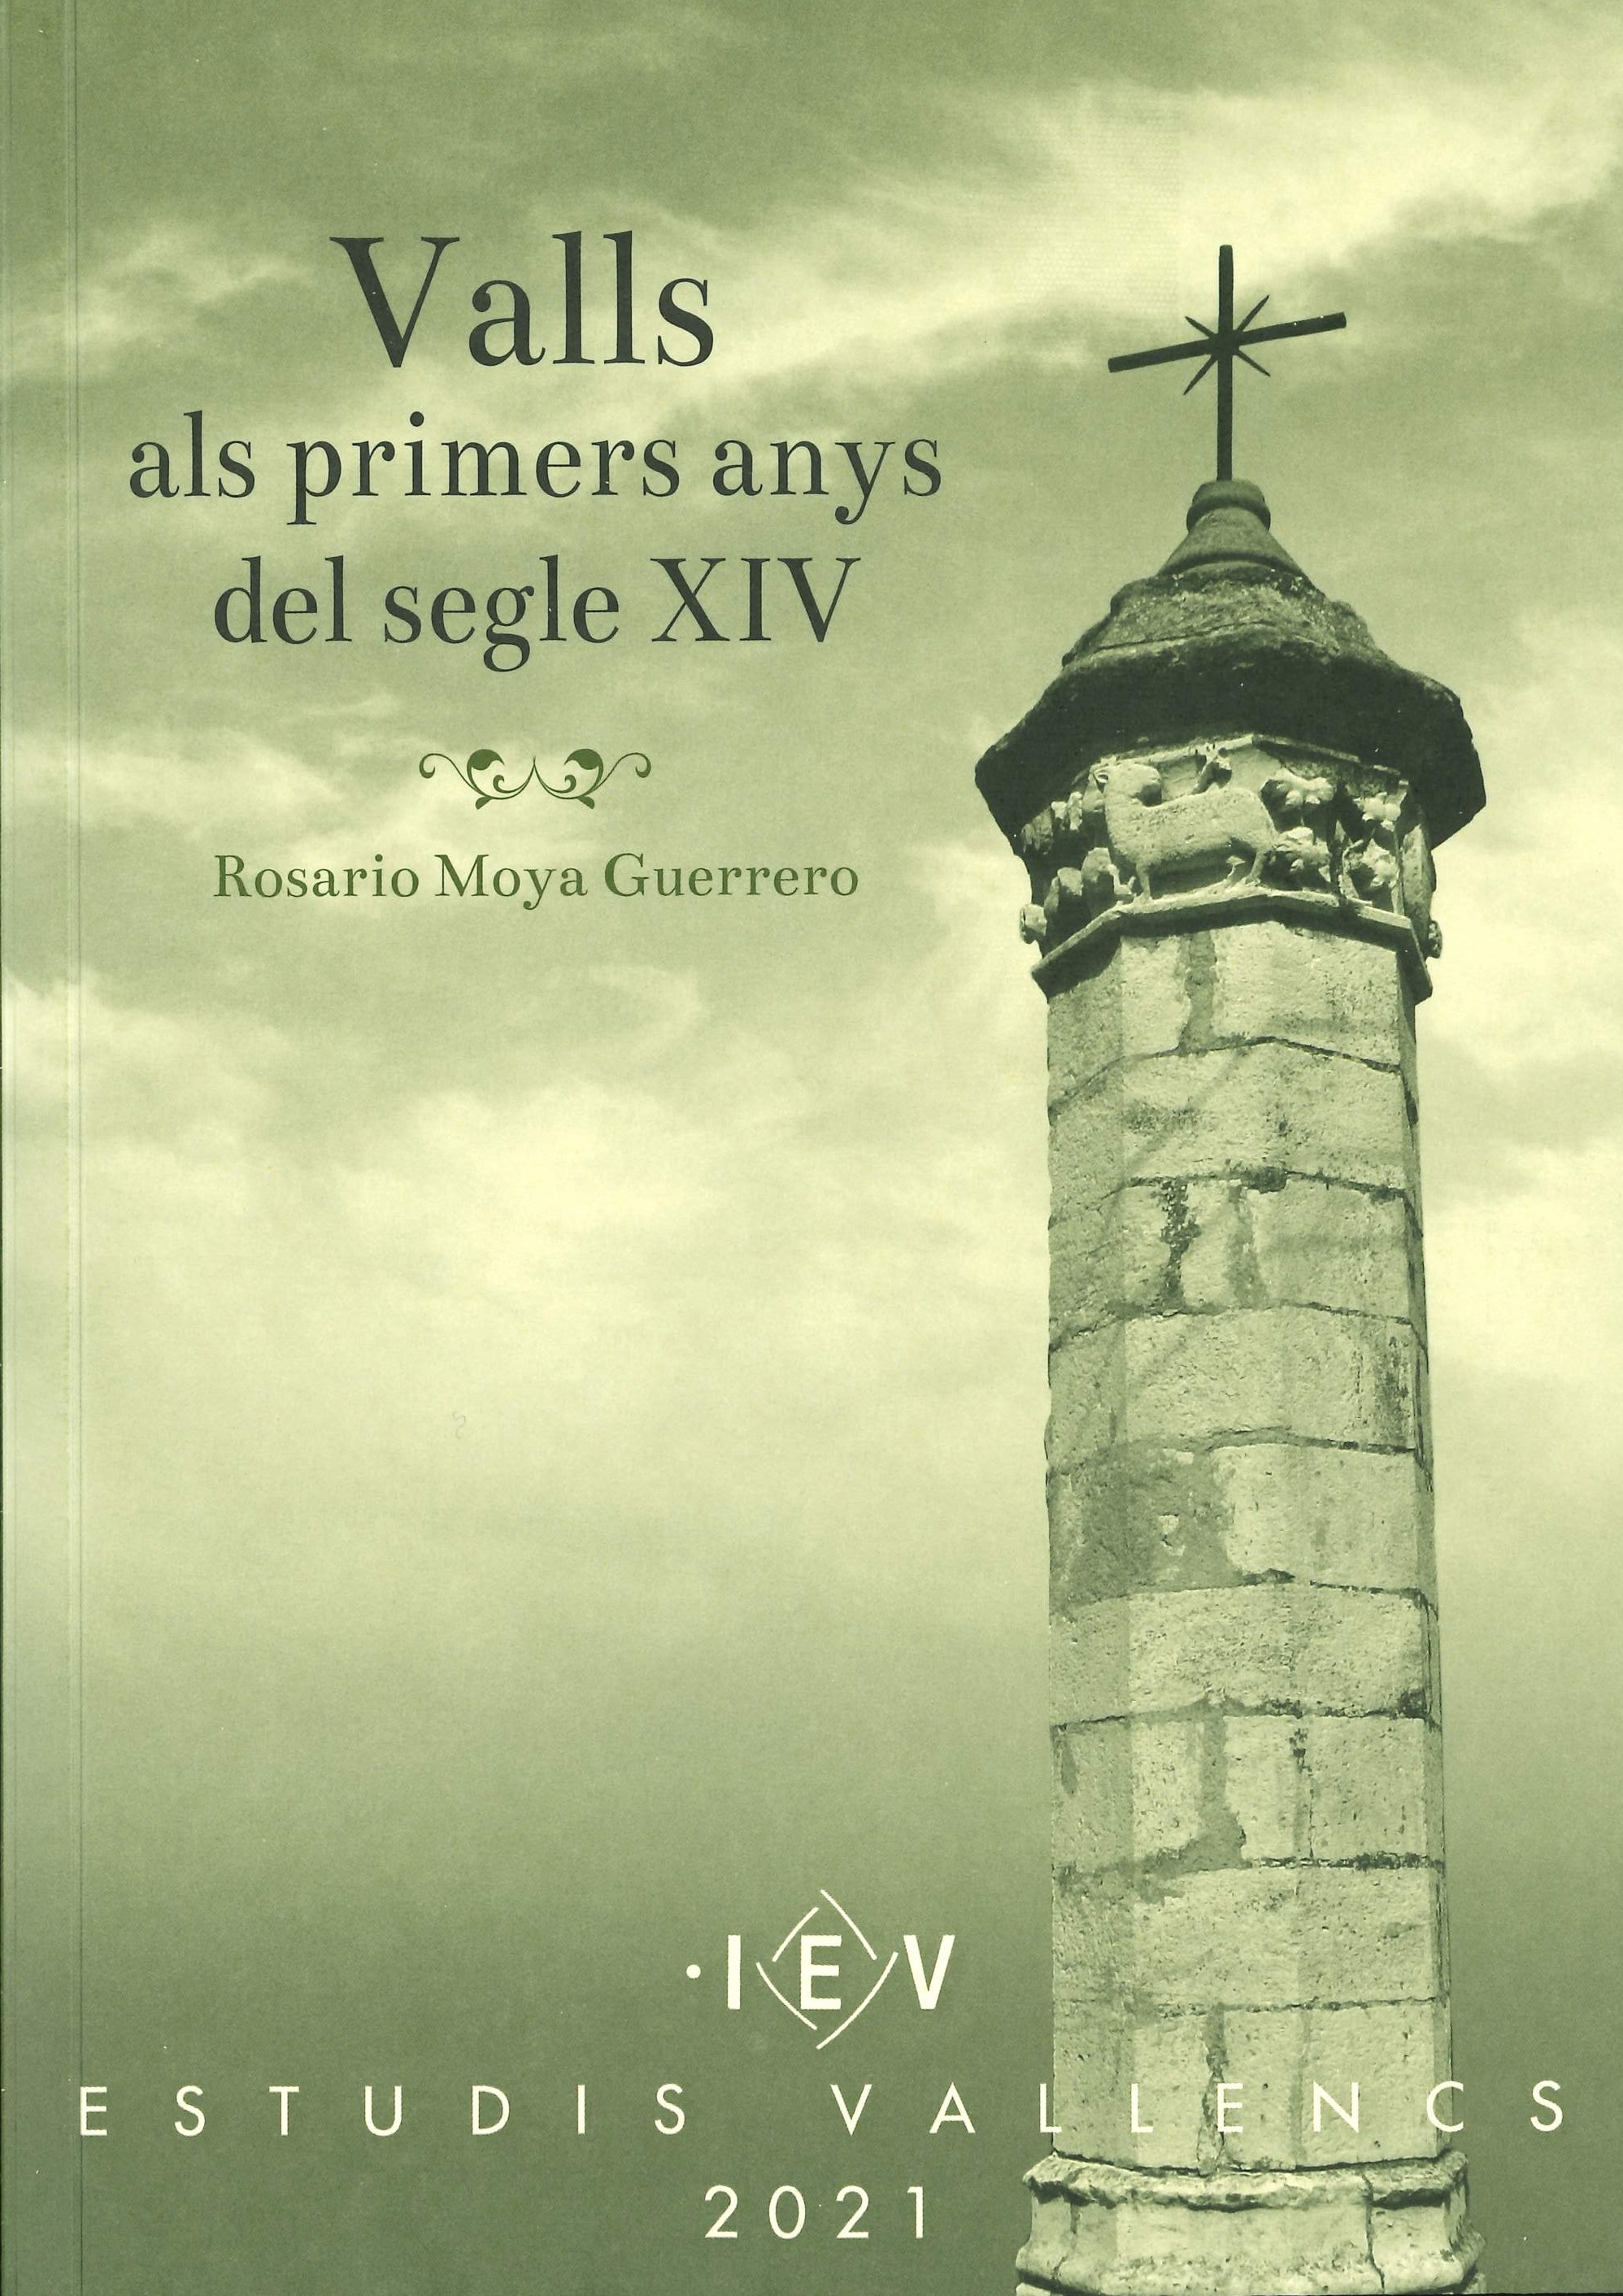 Imagen de portada del libro Valls als primers anys del segle XIV